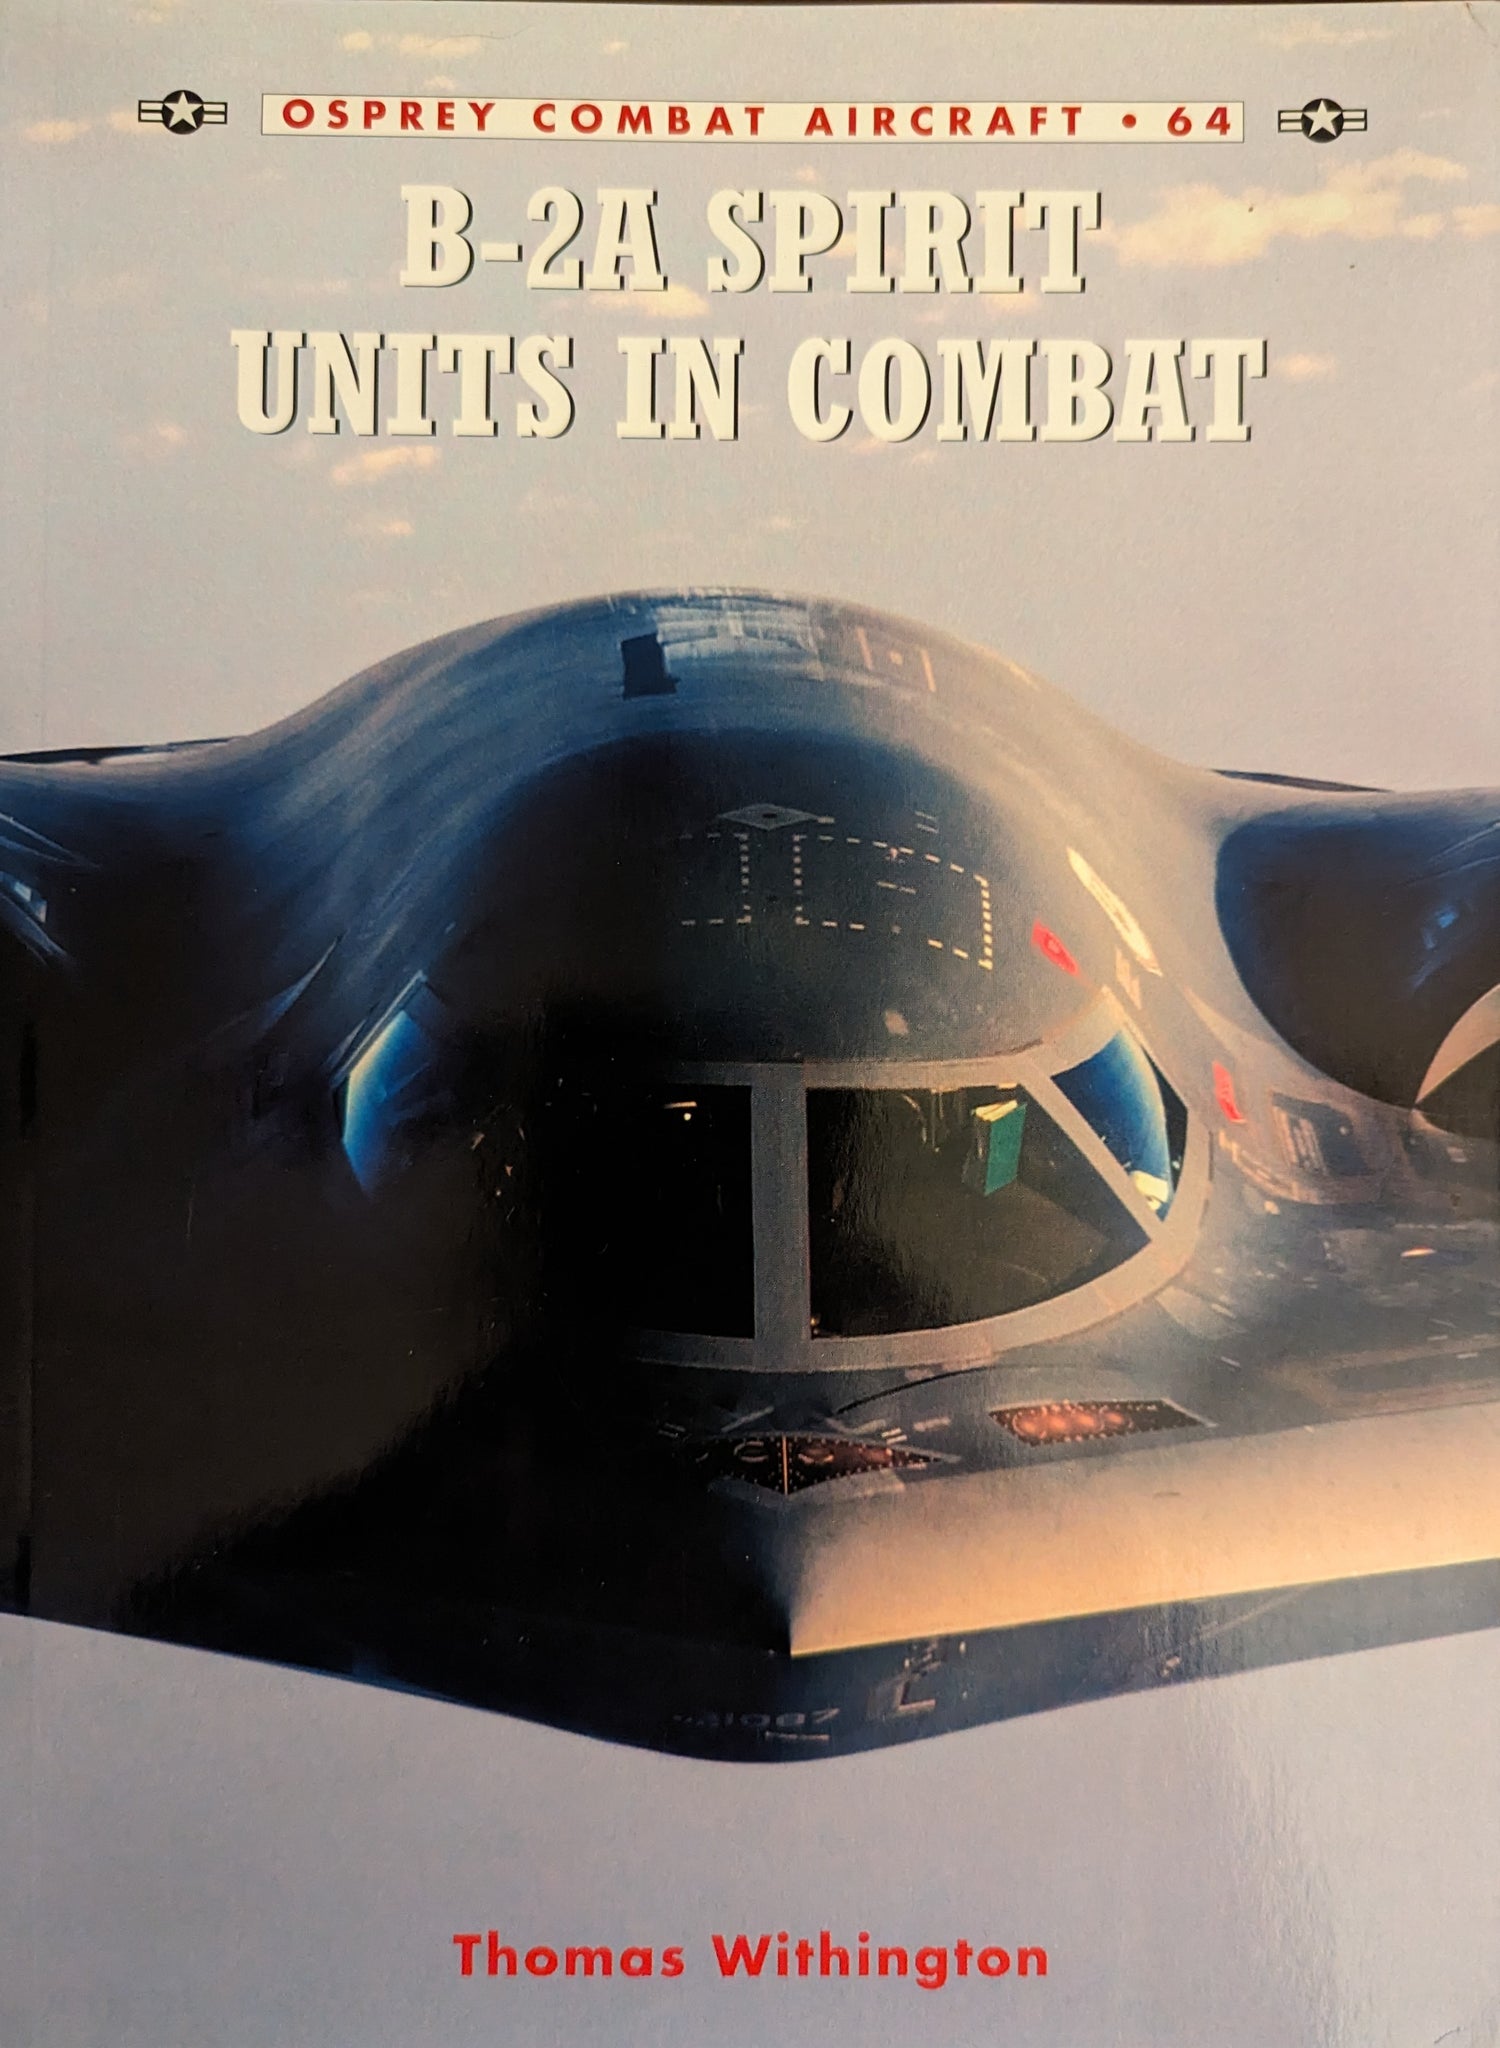 B-2A SPIRIT UNIT IN COMBAT 9Osprey Combat Aircrafta No 64)